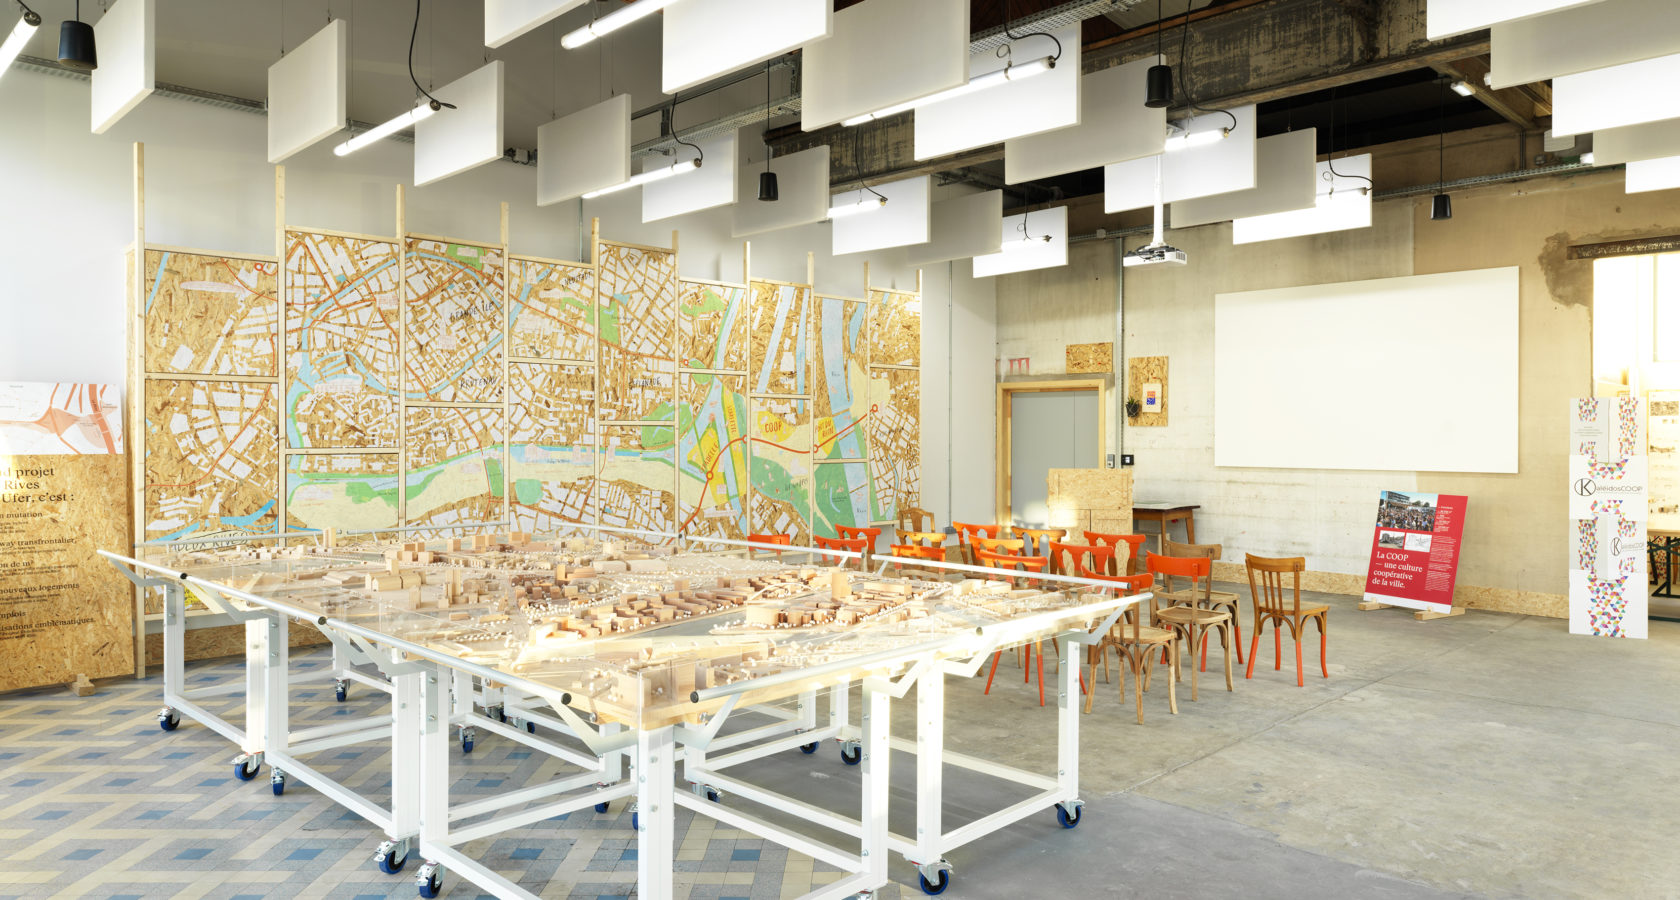 Vue de la salle d'exposition du Point Coop - Café Deux-Rives, sa maquette du projet urbain et son mur interactif. (Crédits photo : Siméon Levaillant)